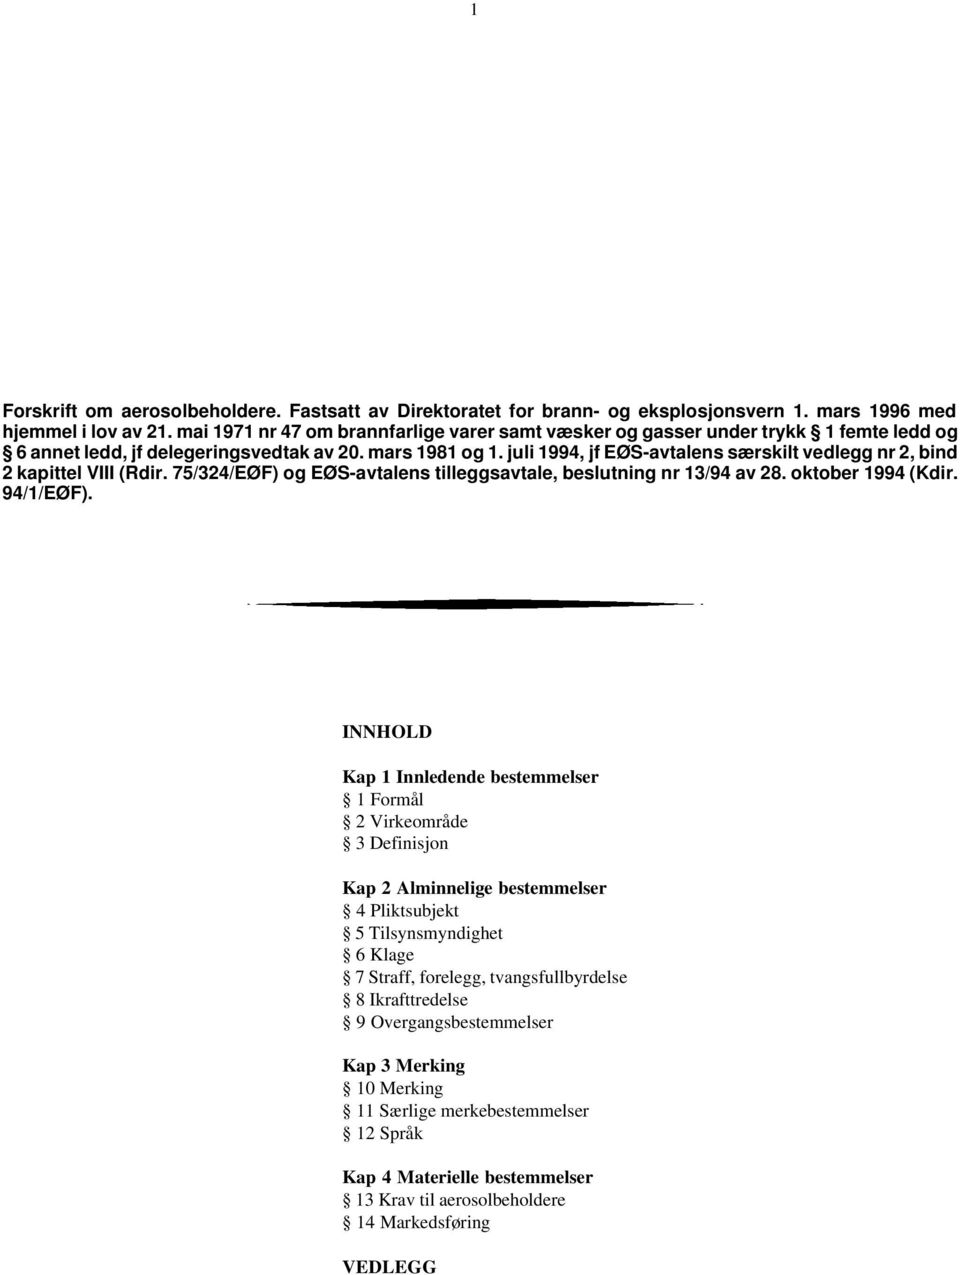 juli 1994, jf EØS-avtalens særskilt vedlegg nr 2, bind 2 kapittel VIII (Rdir. 75/324/EØF) og EØS-avtalens tilleggsavtale, beslutning nr 13/94 av 28. oktober 1994 (Kdir. 94/1/EØF).